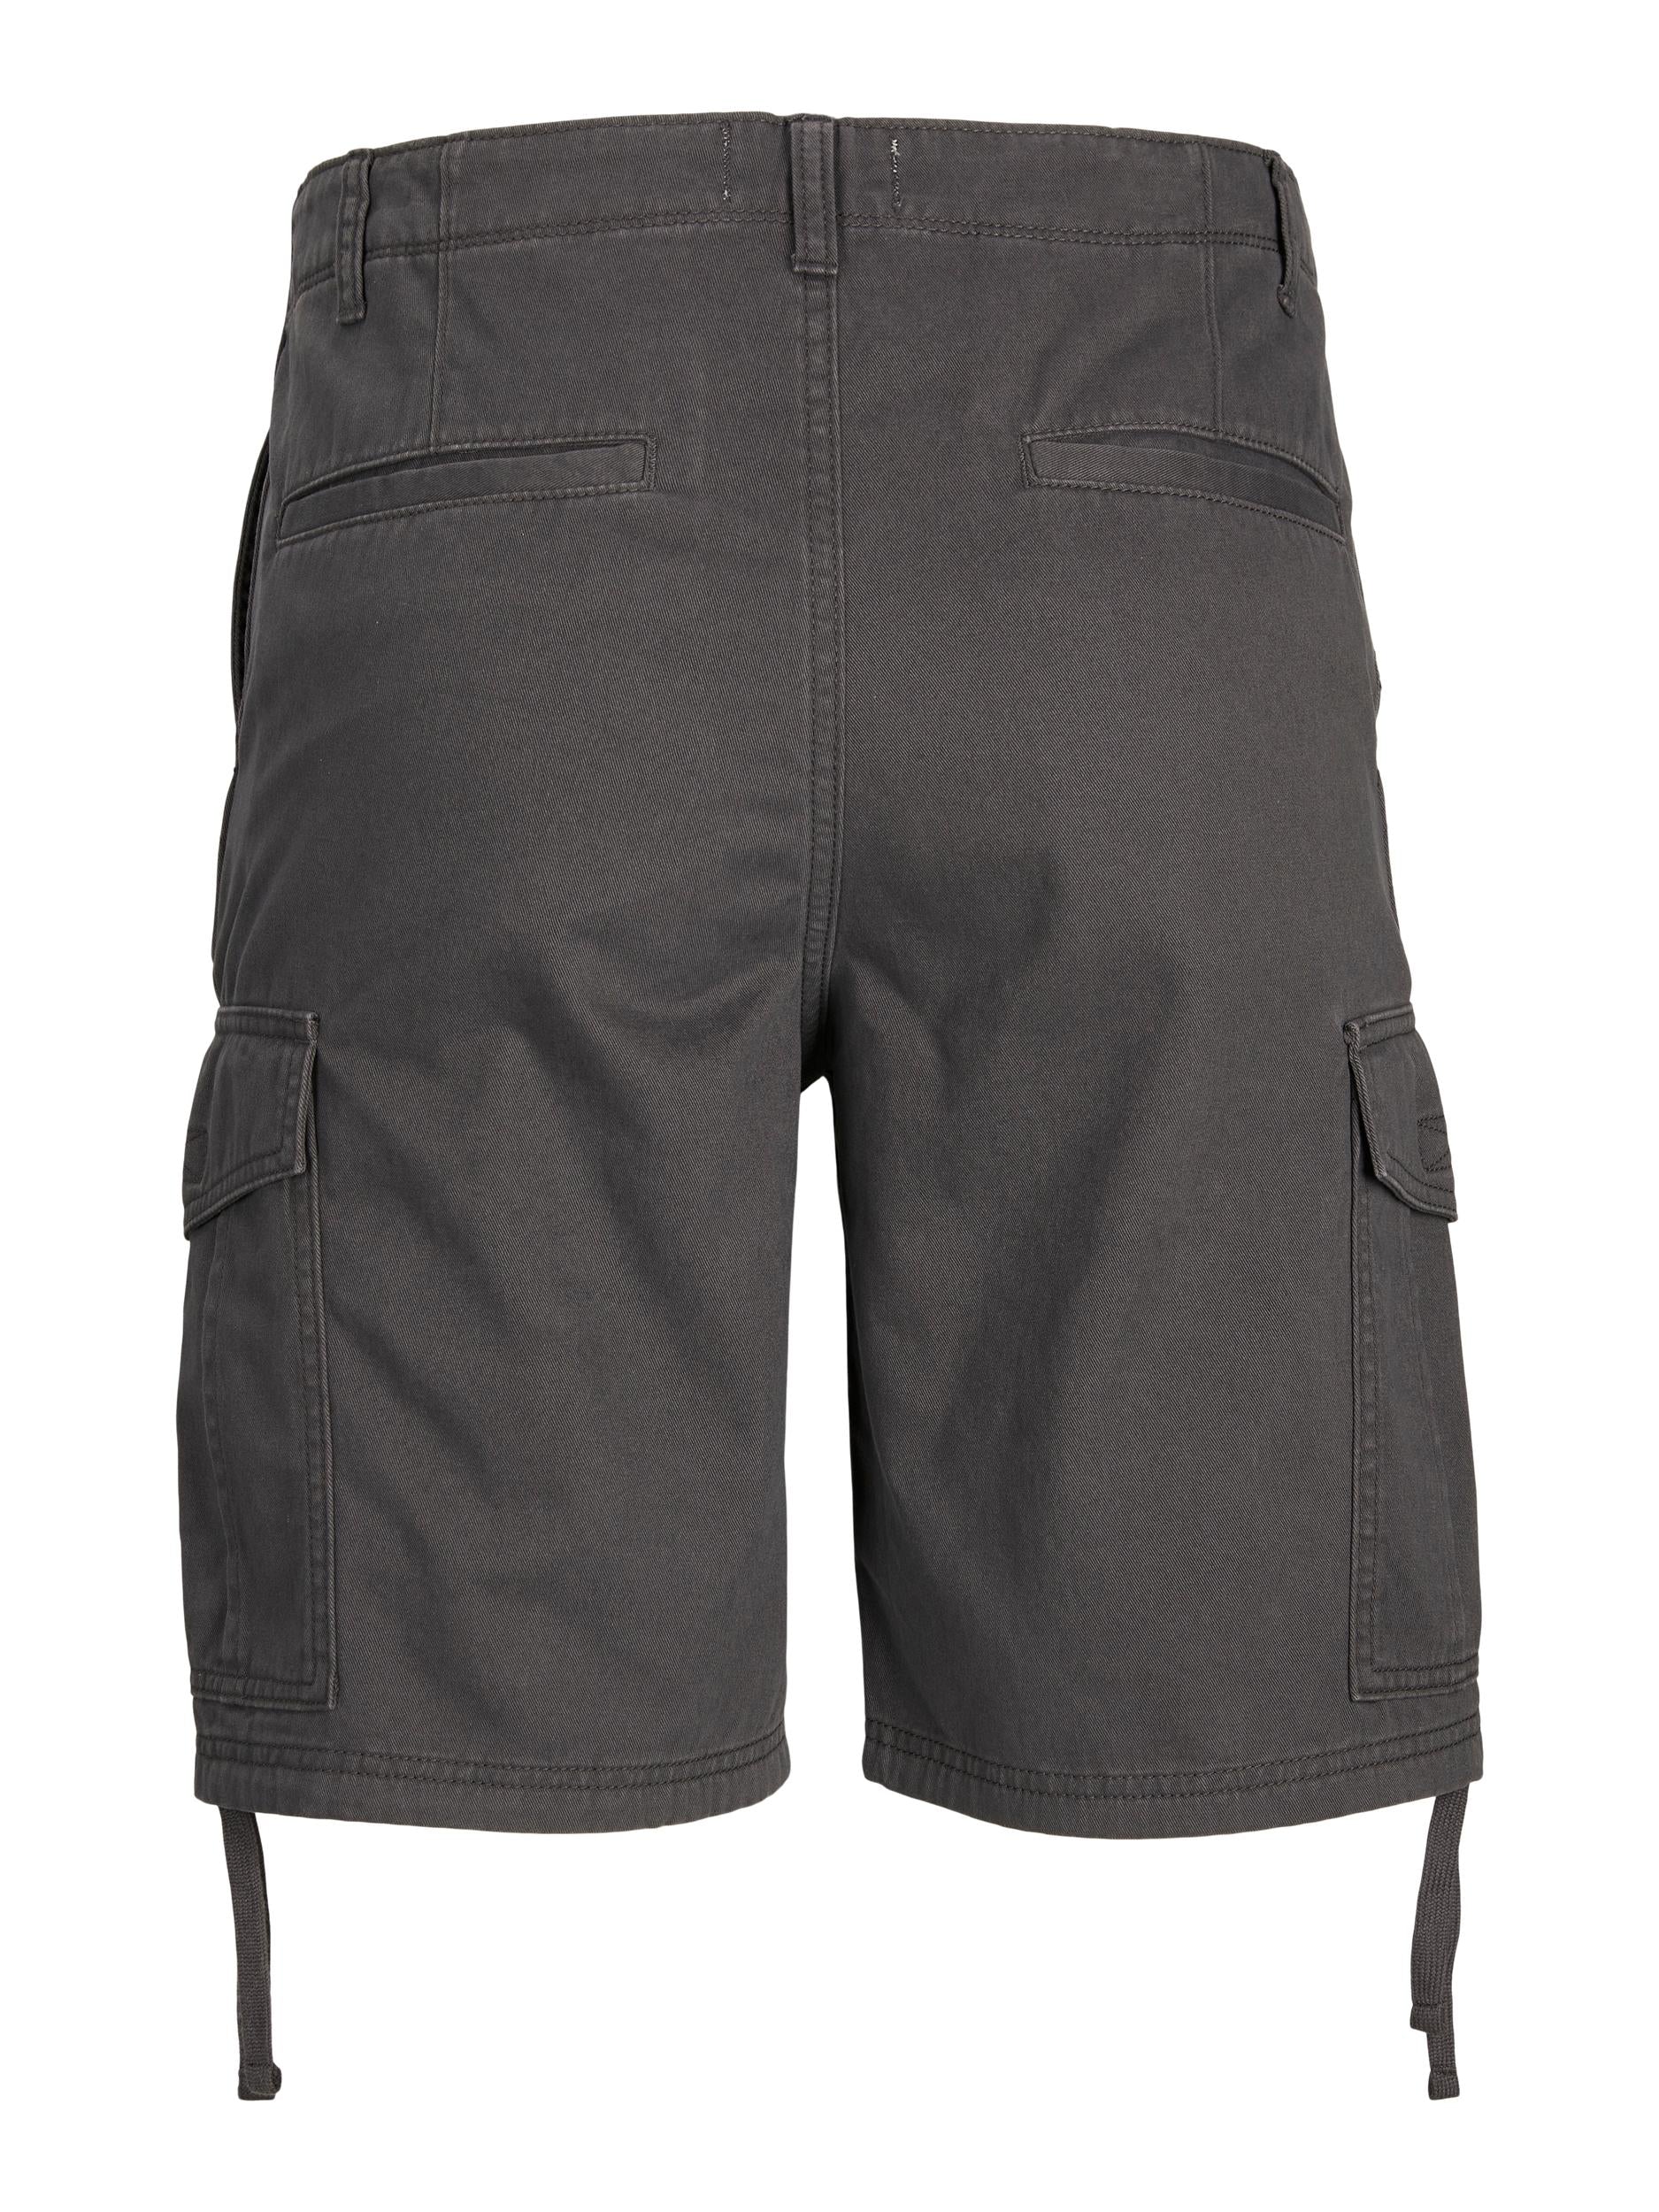 Men's Marley Cargo Shorts Asphalt-Back View